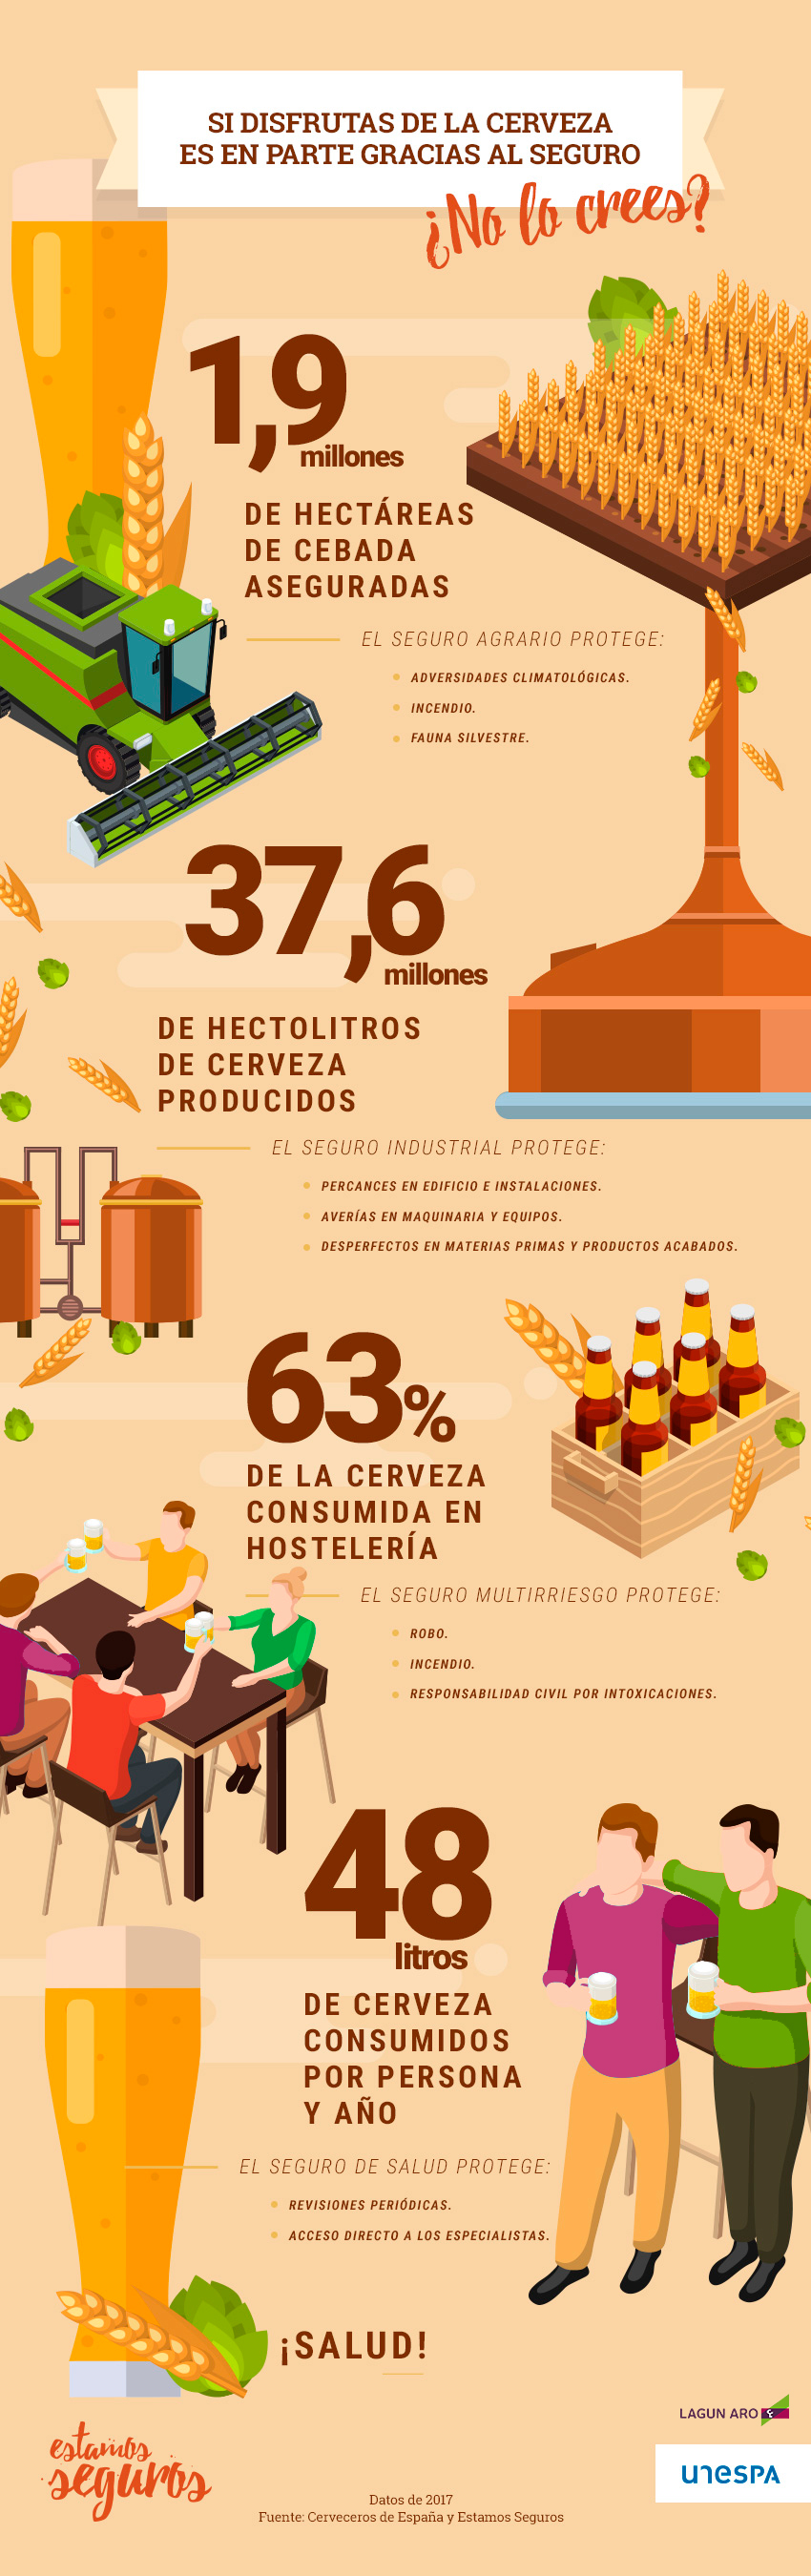 1,9 millones de HECTÁREAS DE CEBADA ASEGURADAS, 37,6 millones HECTOLITROS DE CERVEZA PRODUCIDOS, EL 63% DE LA CERVEZA SE CONSUME EN HOSTELERÍA, 48 litros de cerveza consumida por persona y año